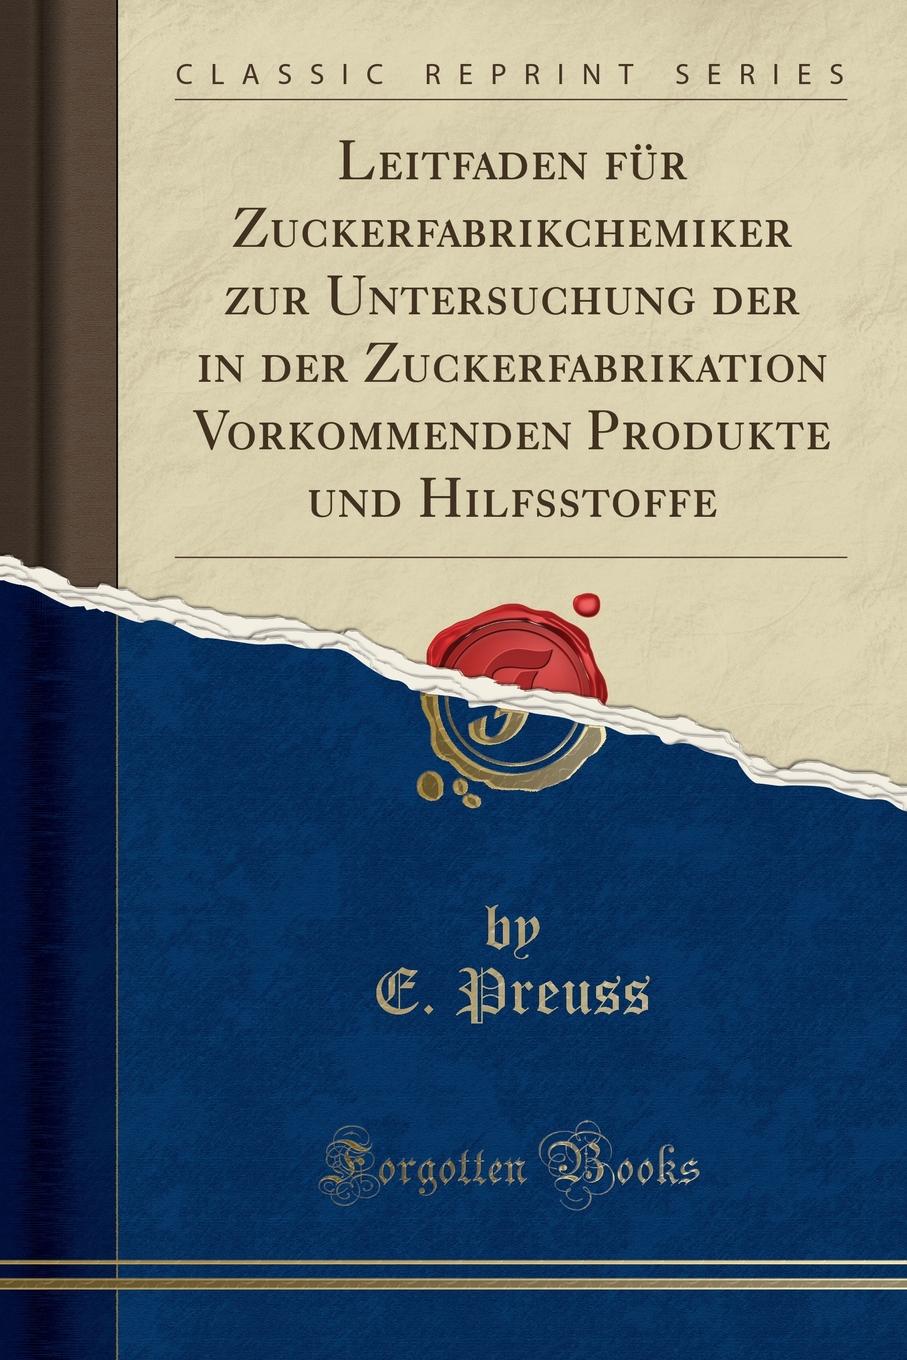 E. Preuss Leitfaden fur Zuckerfabrikchemiker zur Untersuchung der in der Zuckerfabrikation Vorkommenden Produkte und Hilfsstoffe (Classic Reprint)